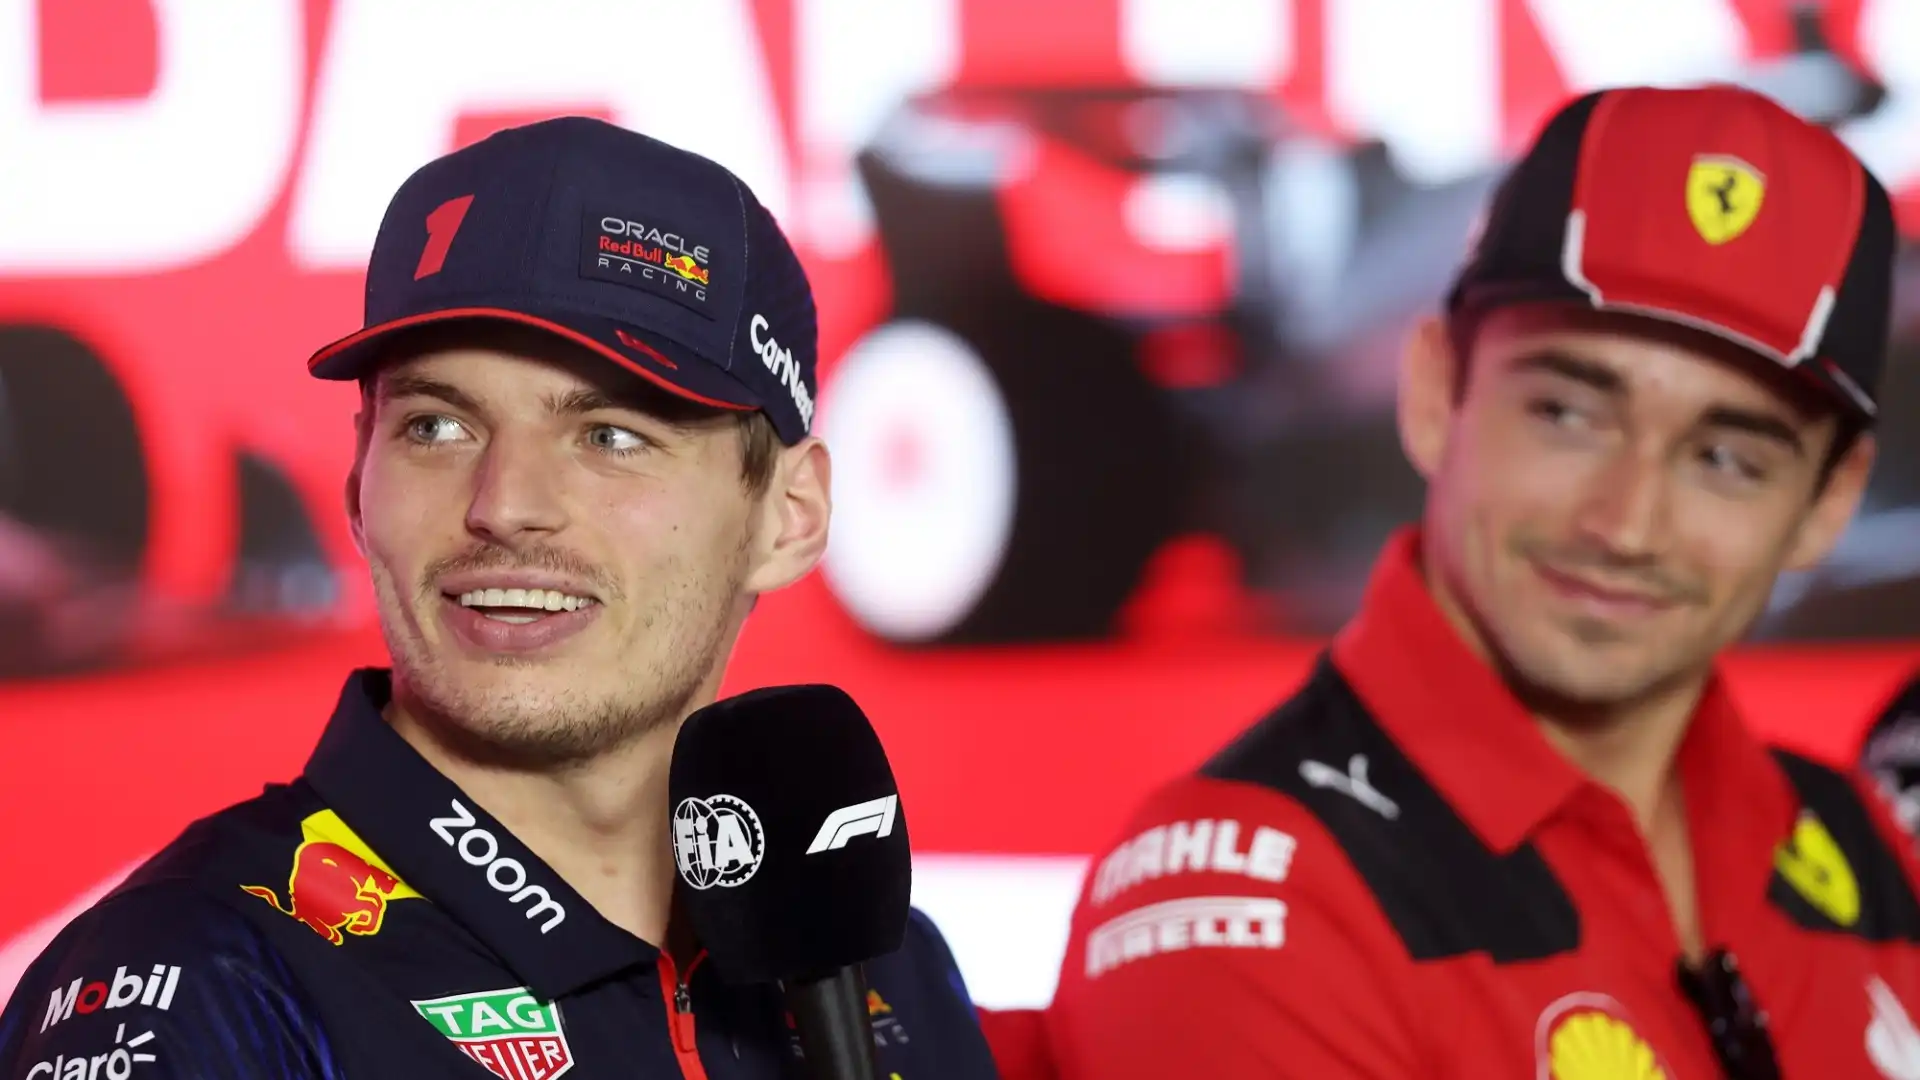 Max Verstappen ha fatto alcune dichiarazioni sorprendenti sulla Ferrari